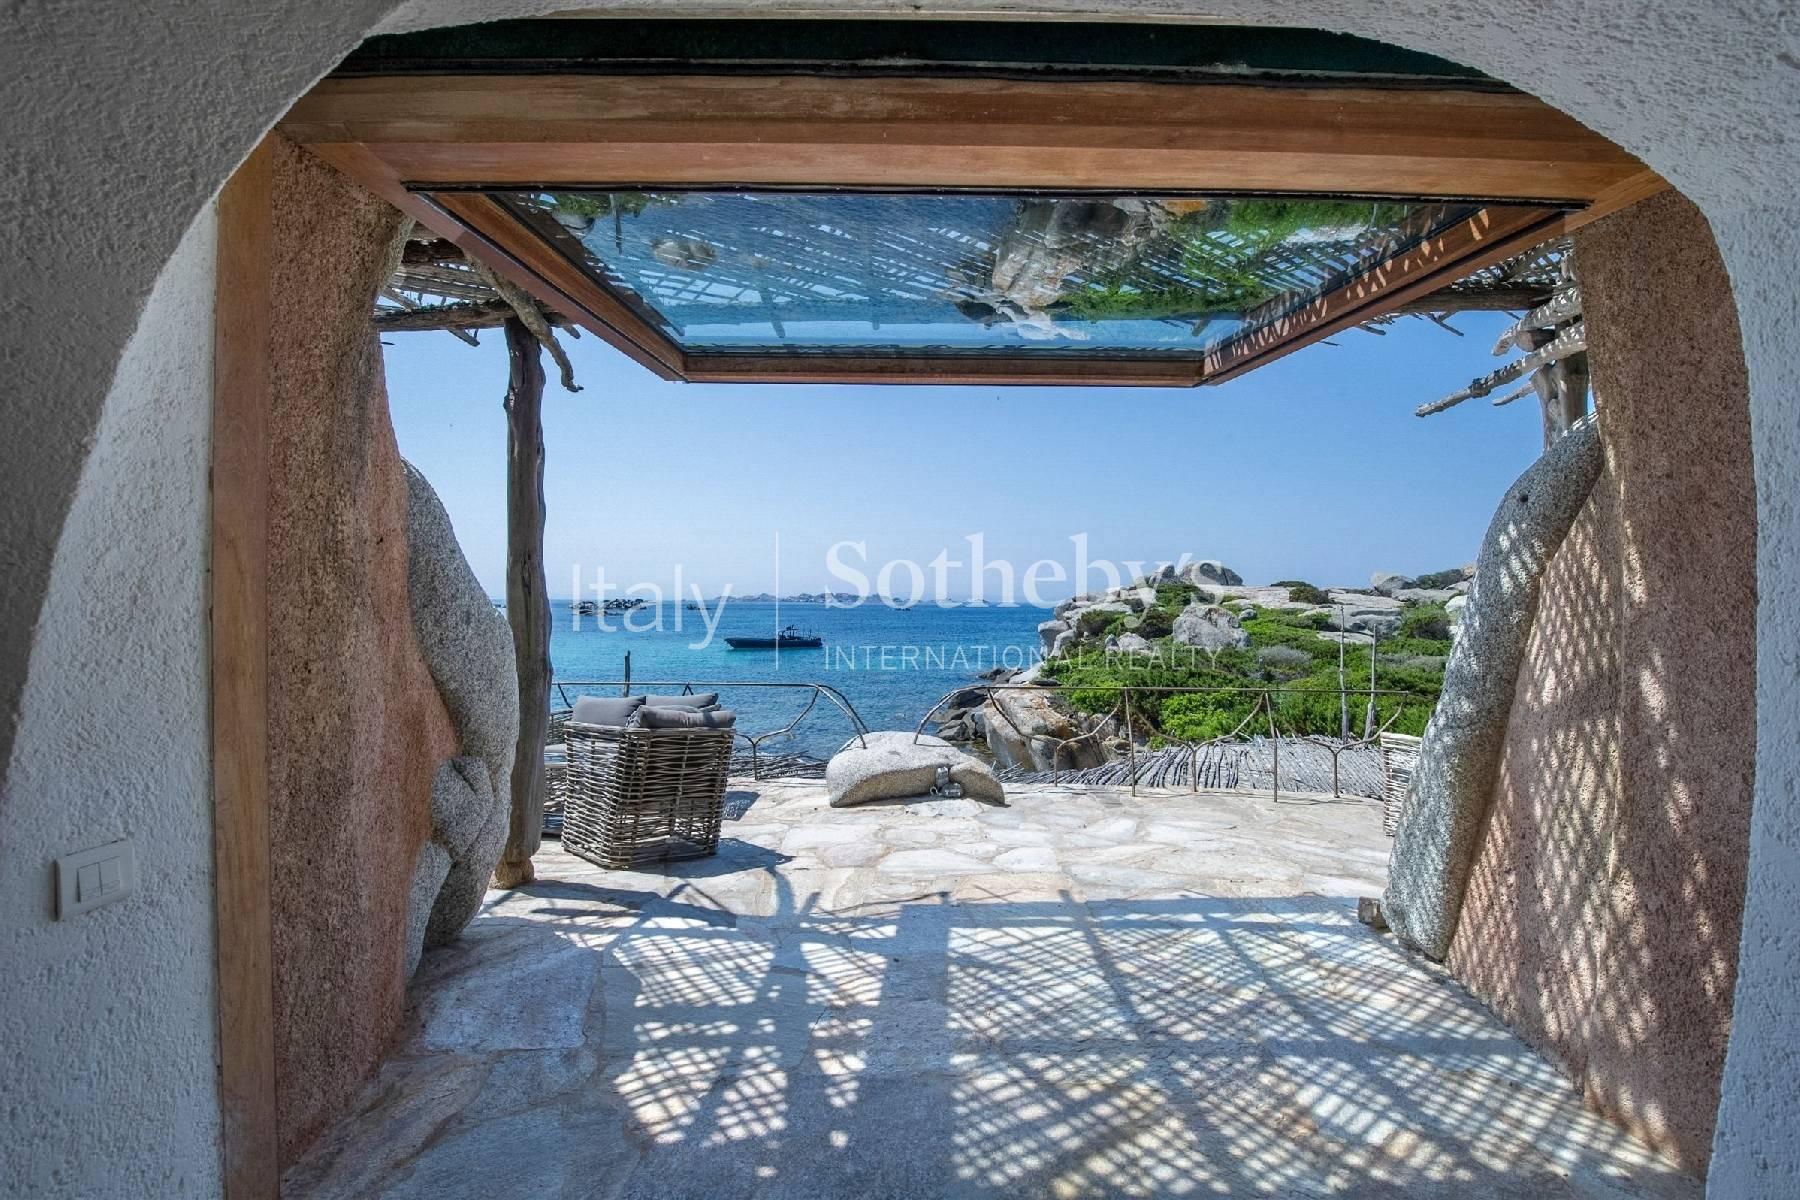 Cavallo Island, Corsica - Pieds-dans-l'eau villa designed by the architect Savin Couelle - 2